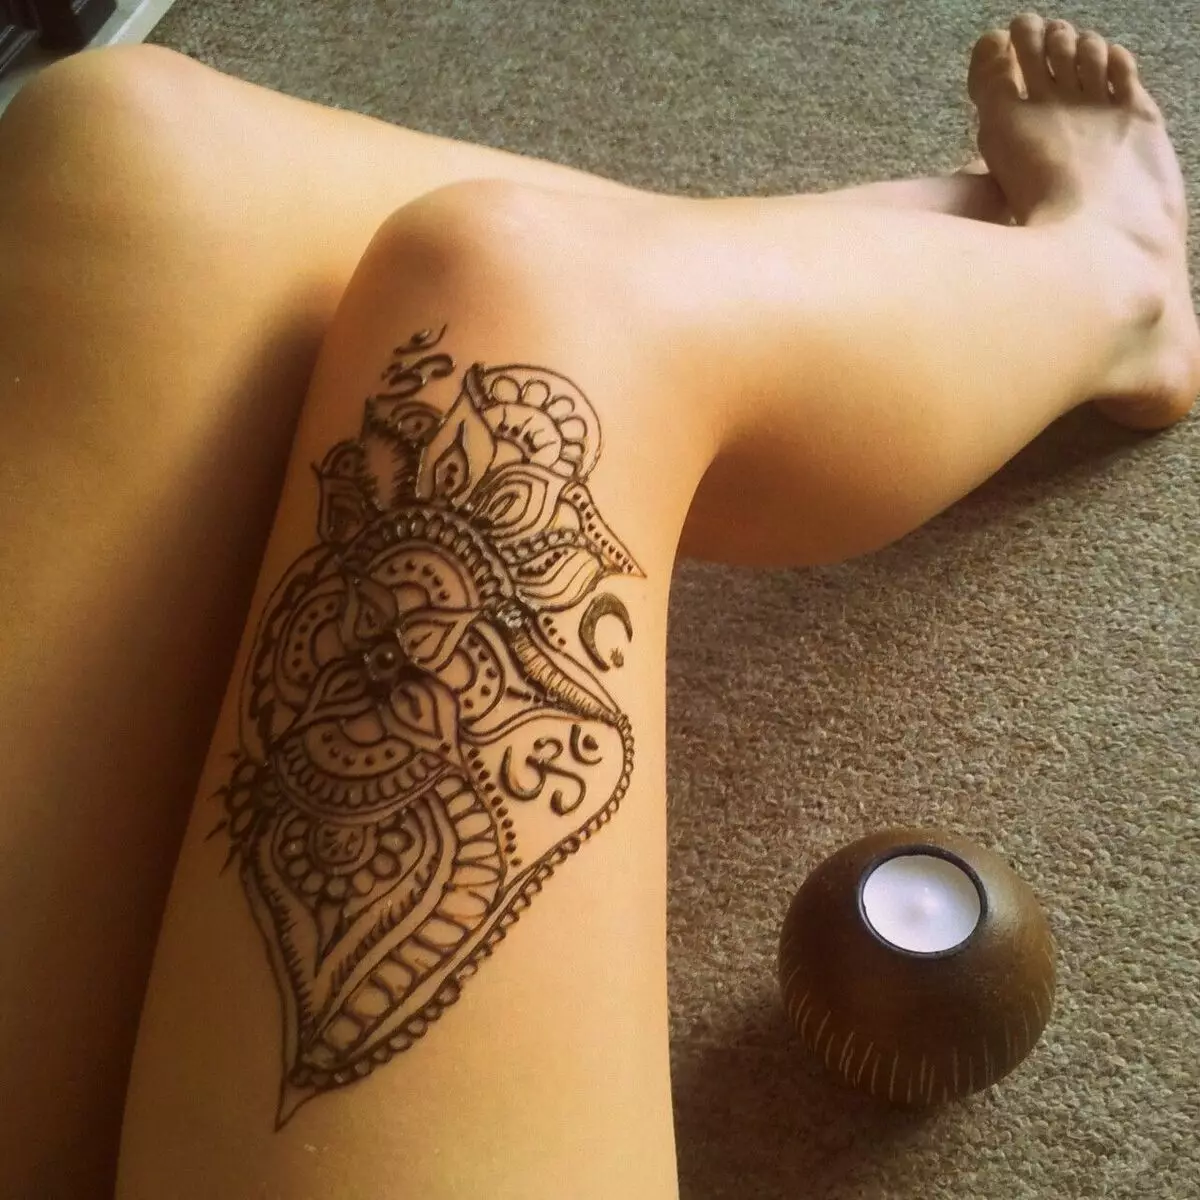 Biotate: Co je to a kolik tetování Henna a jiskry drží? Jak to dělají? 291_4